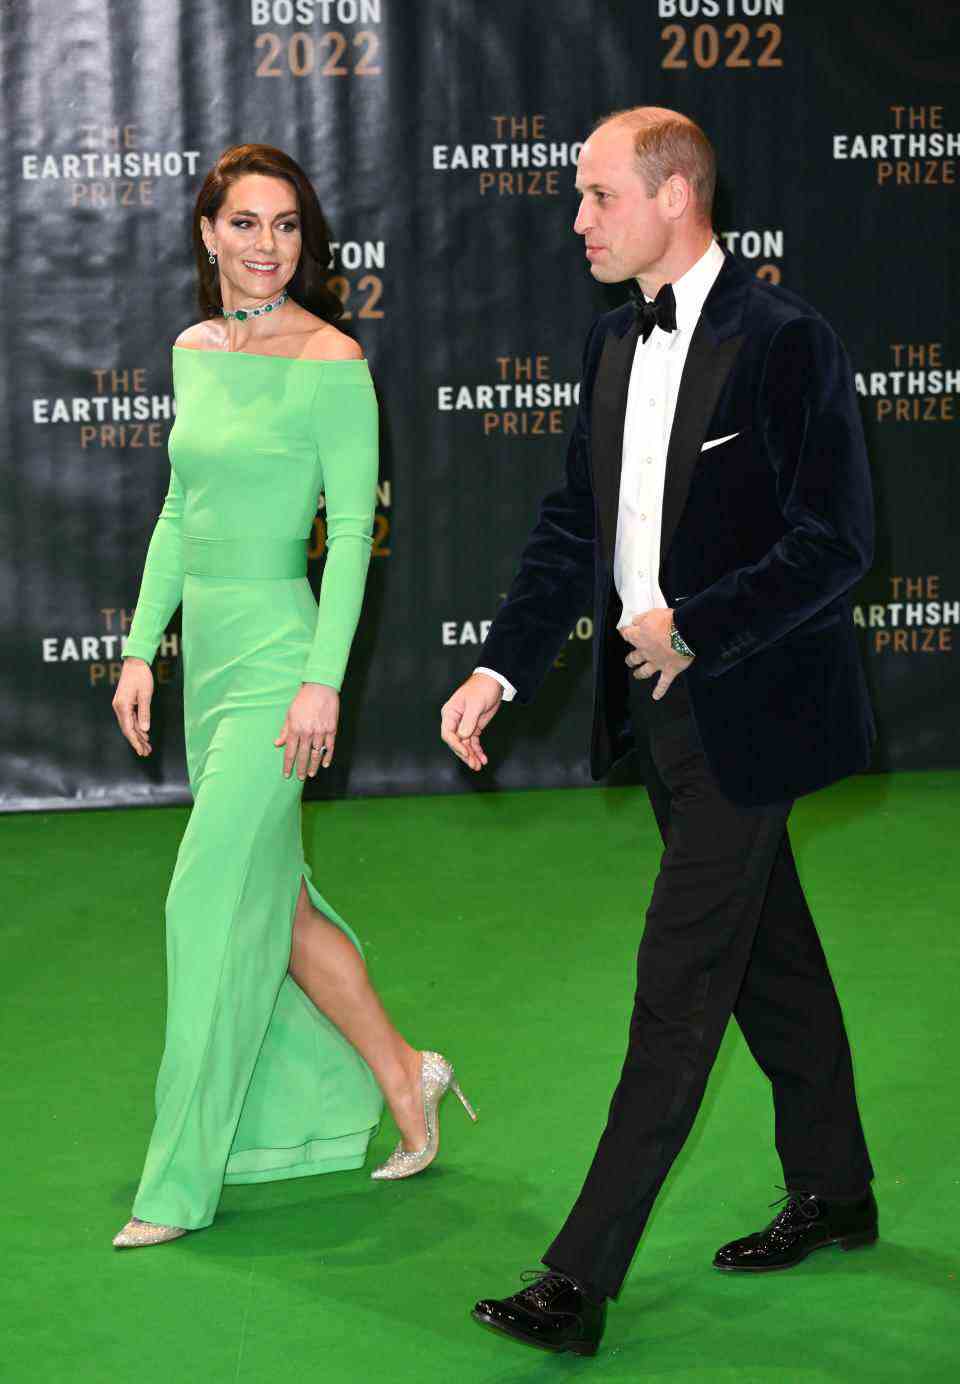 Catherine, princesse de Galles et le prince William, prince de Galles assistent au prix Earthshot 2022 au MGM Music Hall à Fenway le 02 décembre 2022 à Boston, Massachusetts.